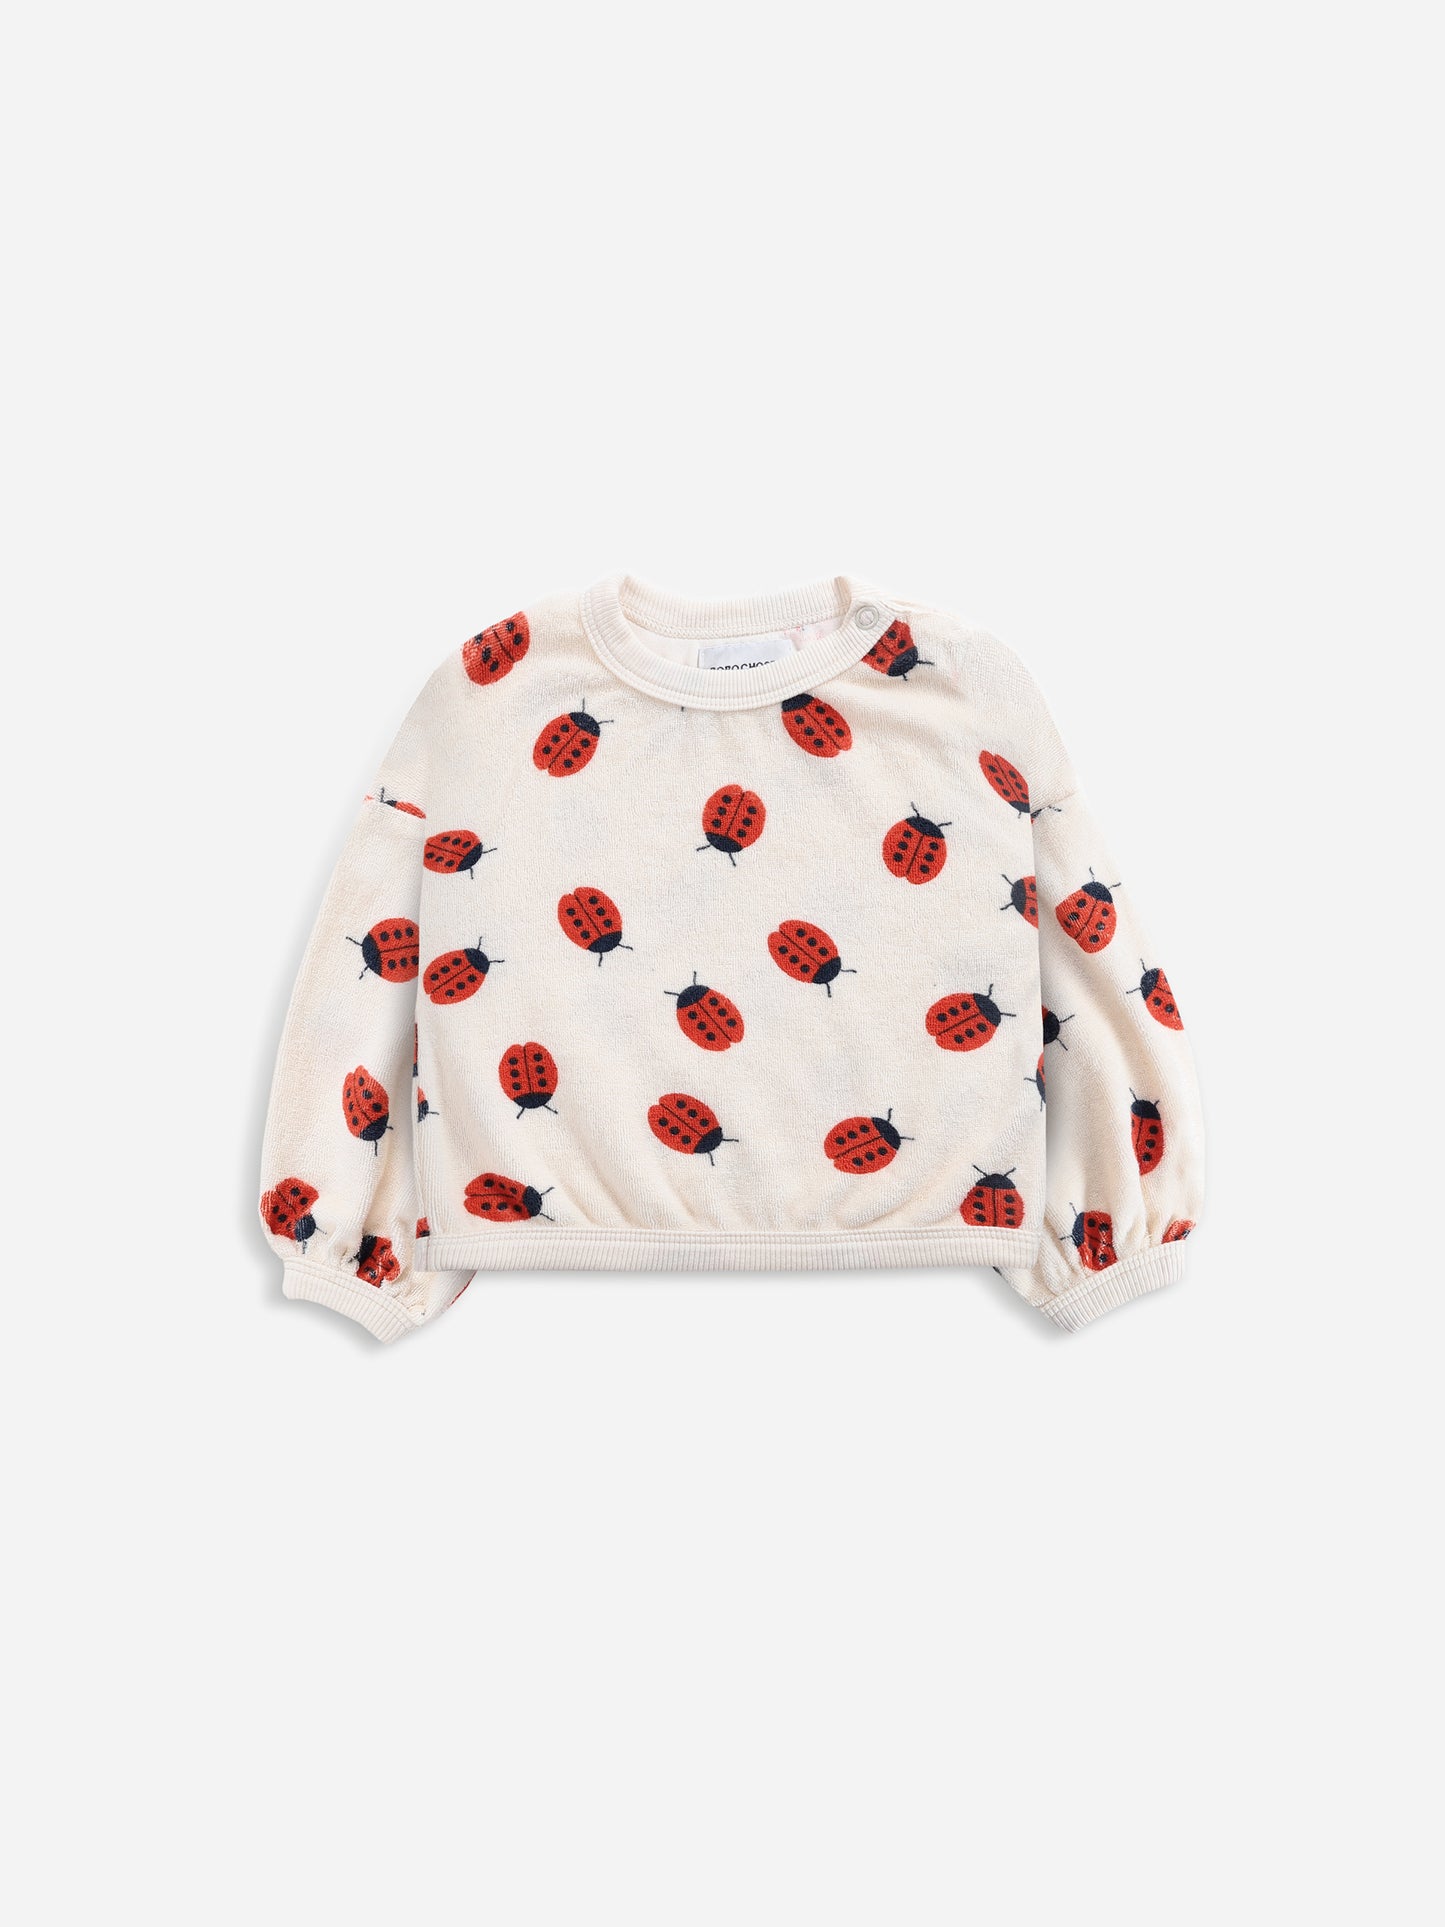 Ladybug All Over Sweatshirt